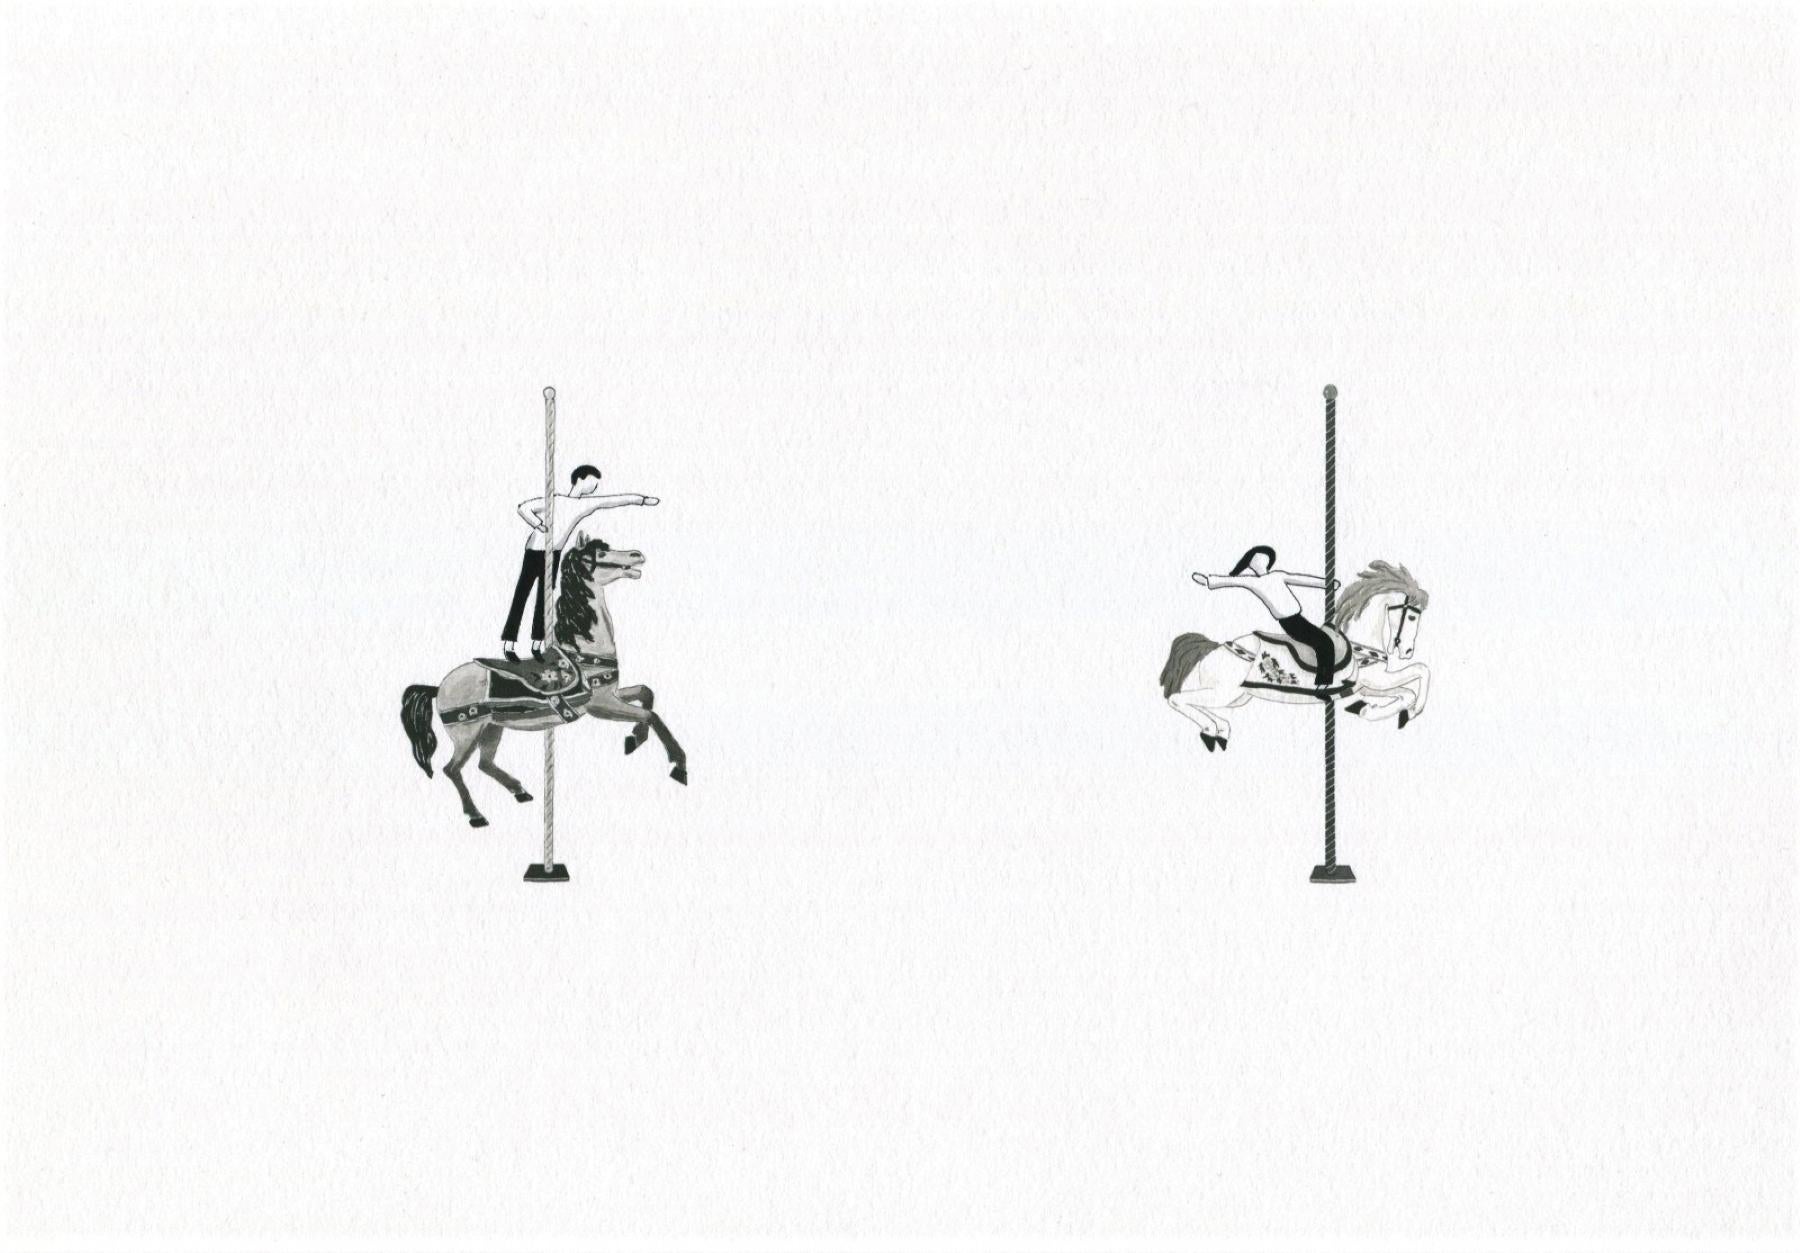 Kin Choi Lam Portrait Print – Archivdruck ""Merry-go-round" auf Papier Paar Beziehung Liebe Minimalismus